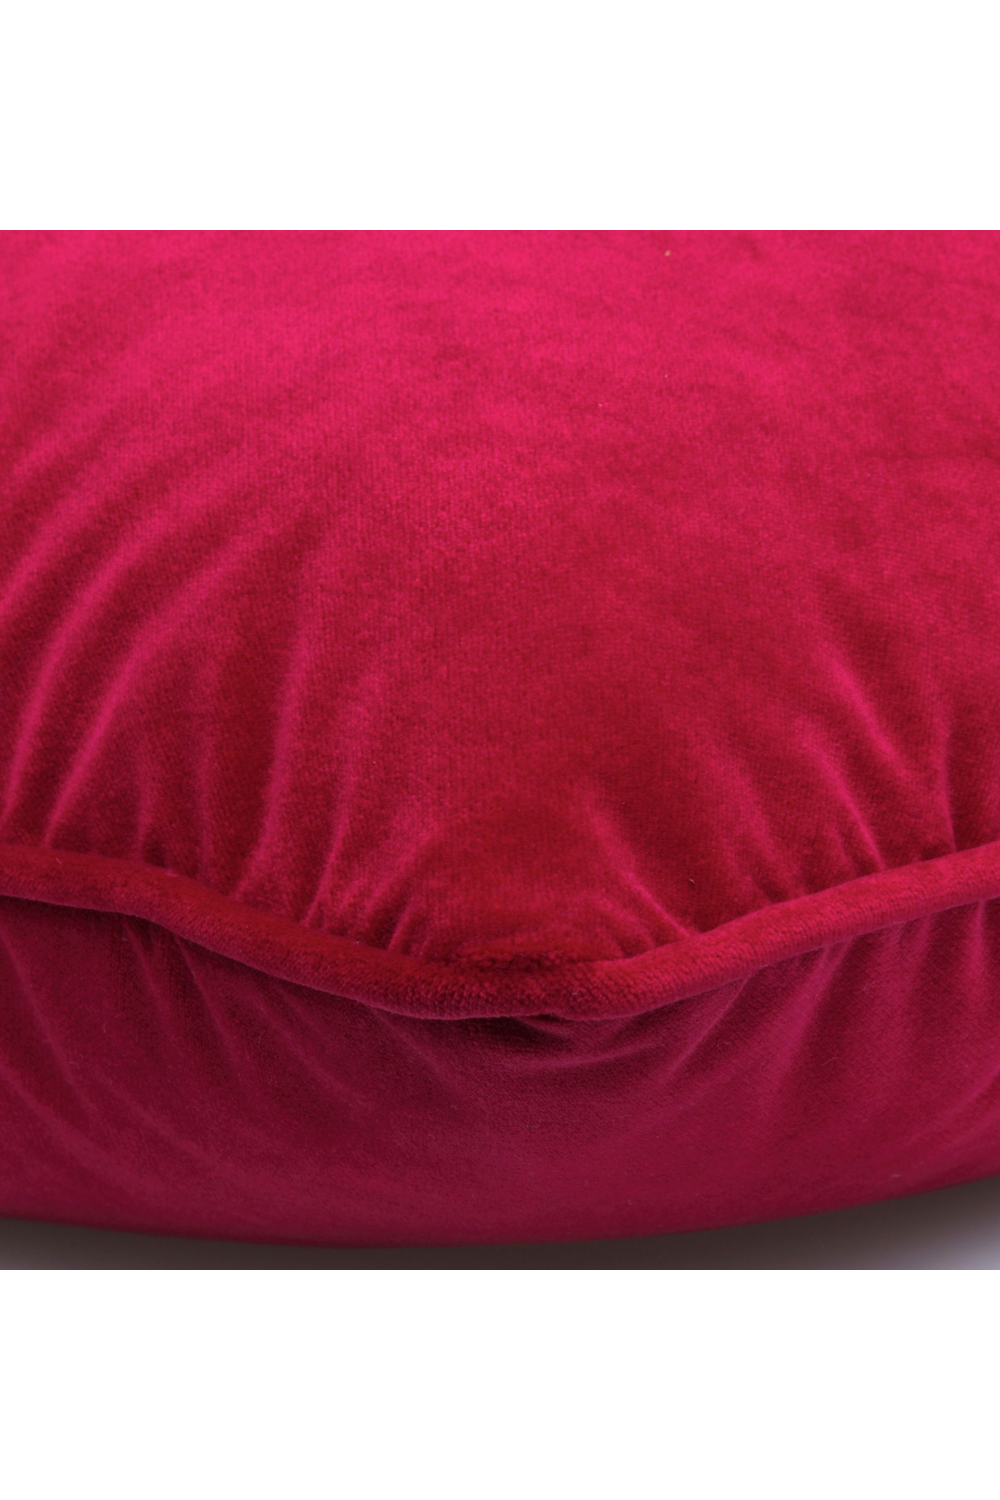 Outdoor Velvet Cushion | Andrew Martin Firepit | Oroa.com